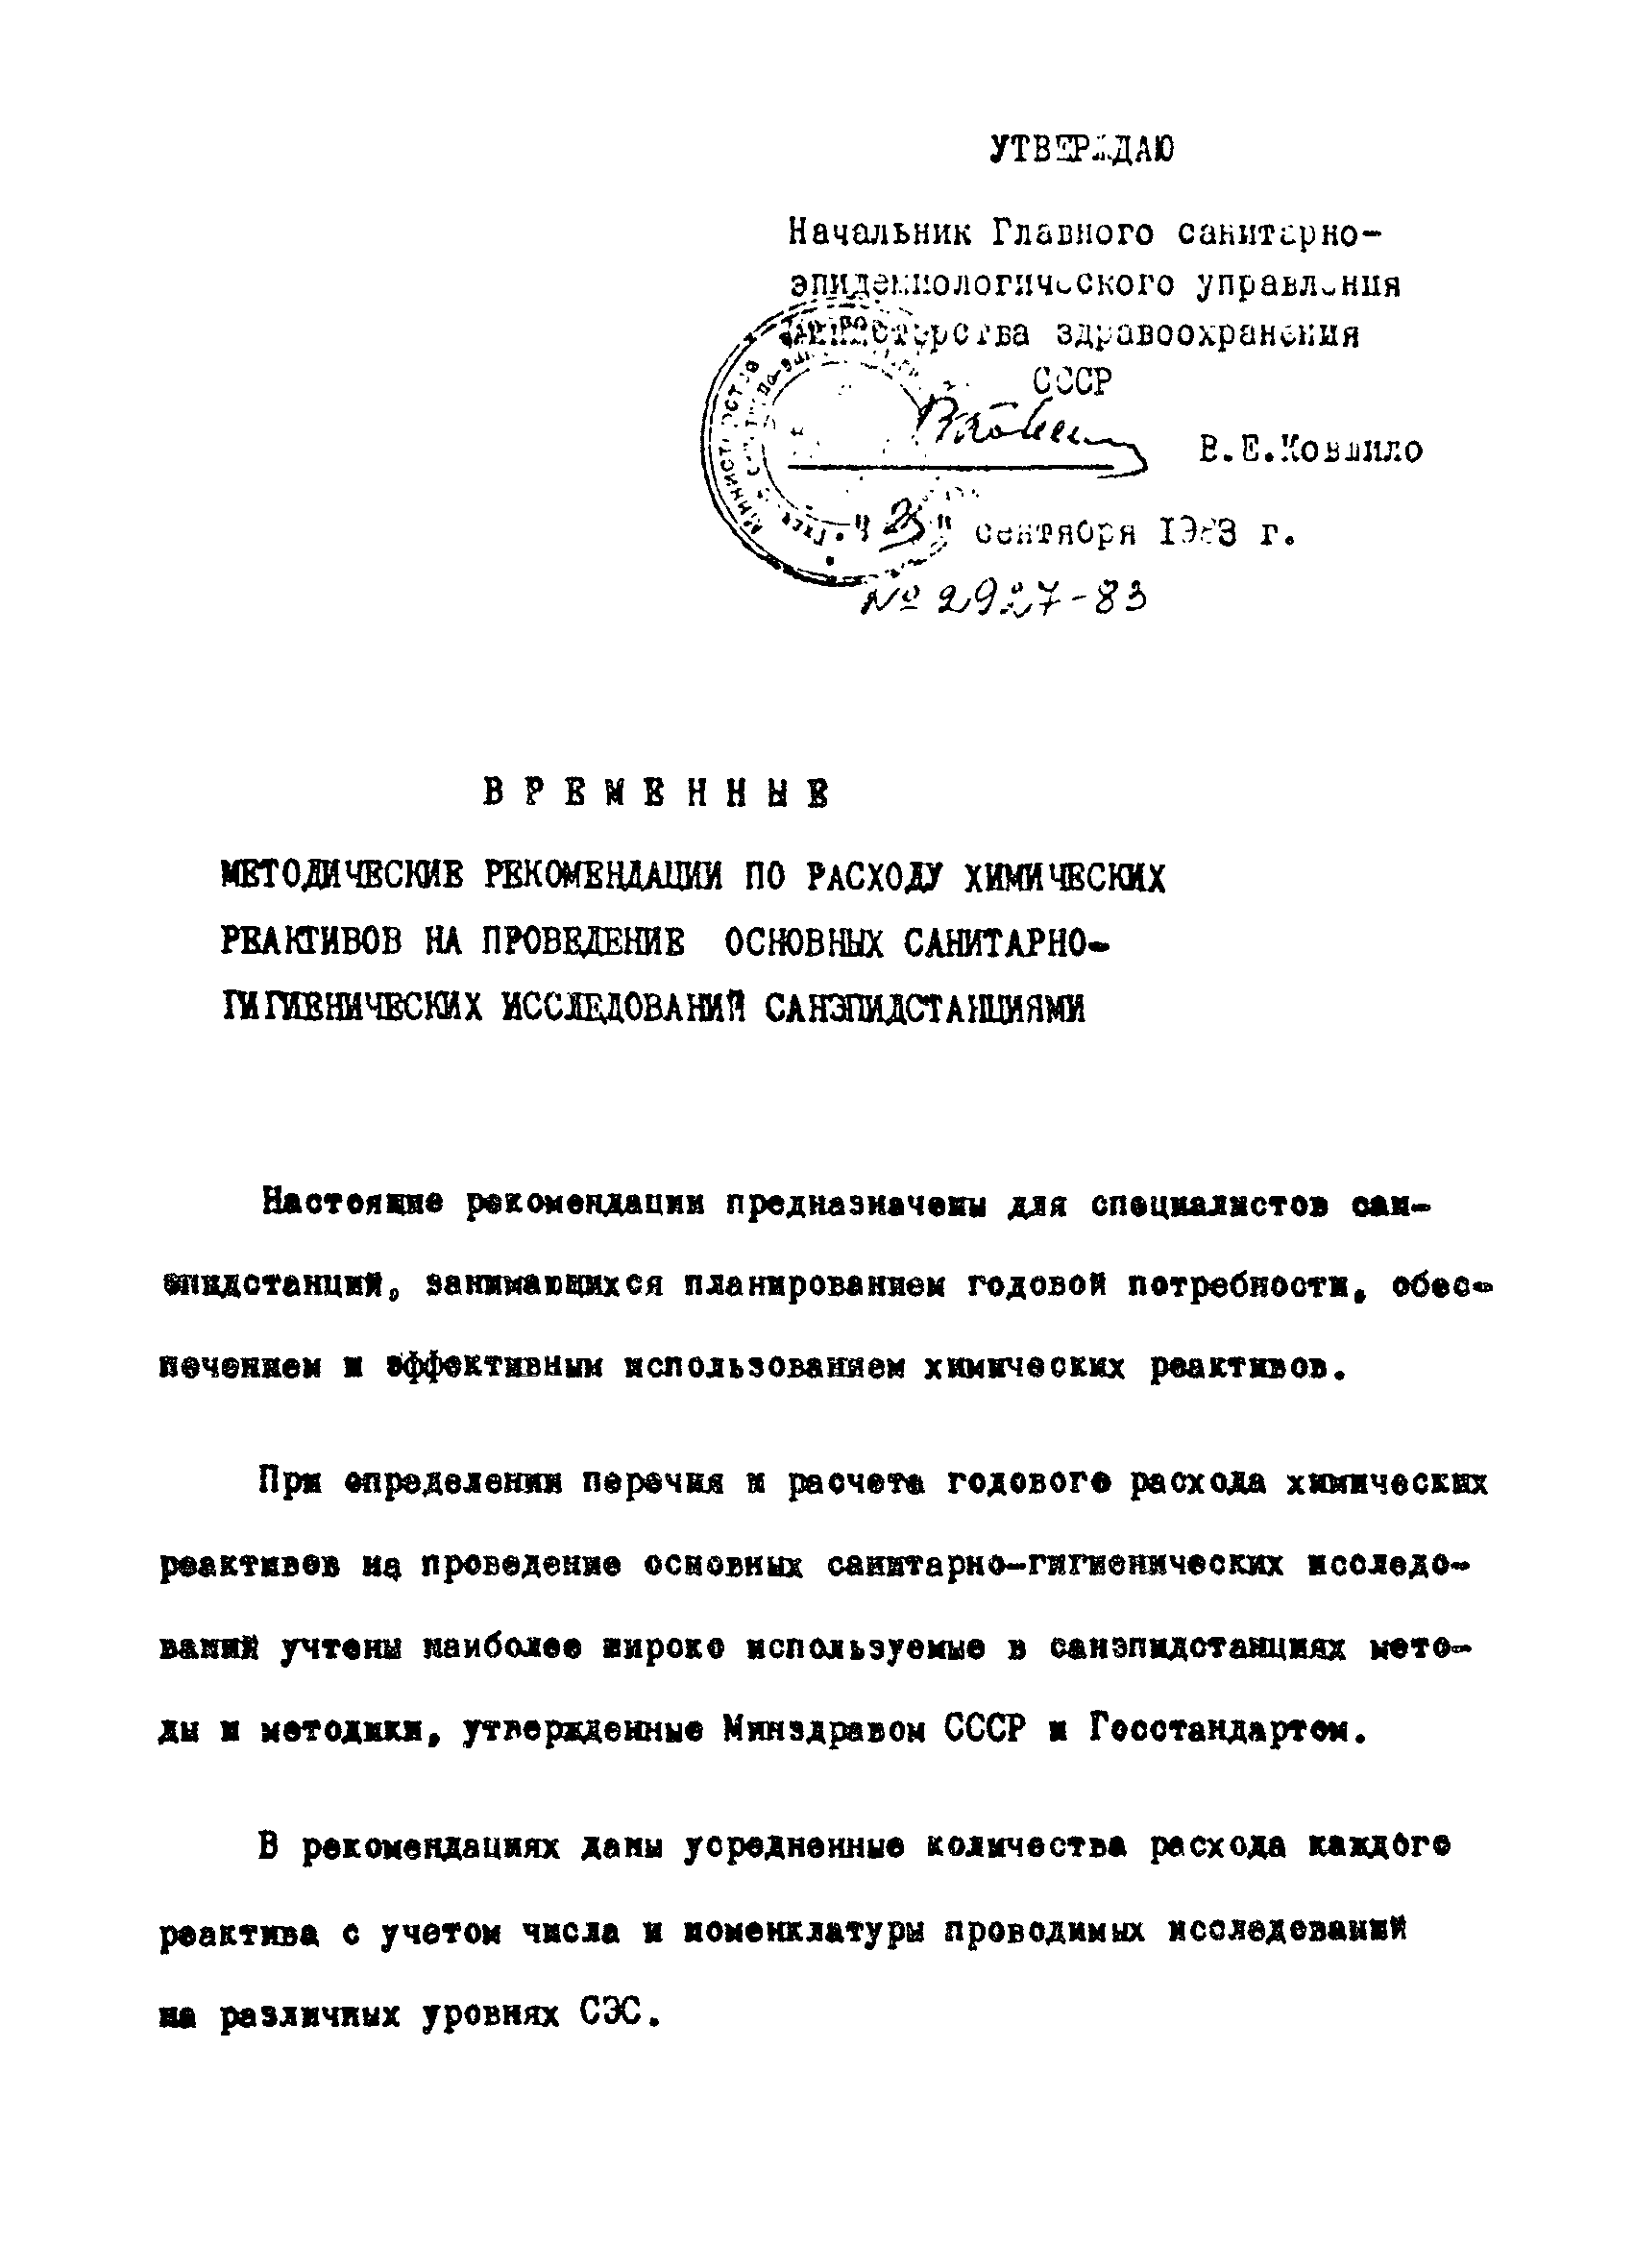 ВМР 2927-83